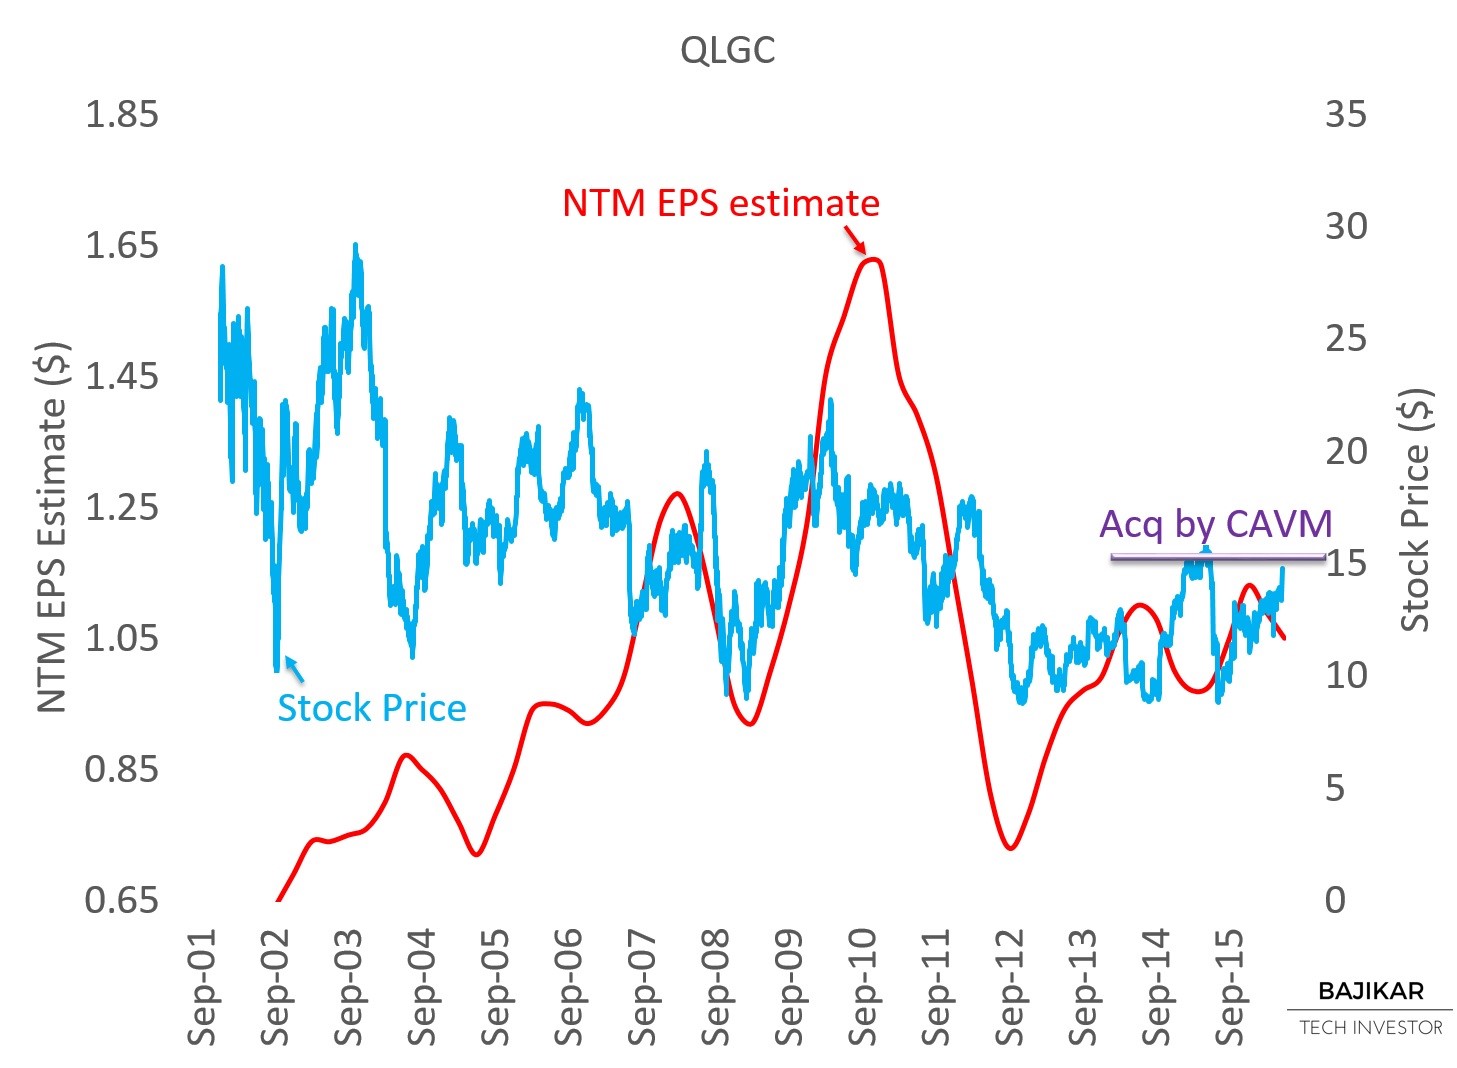 QLGC NTM EPS vs. Stock Price